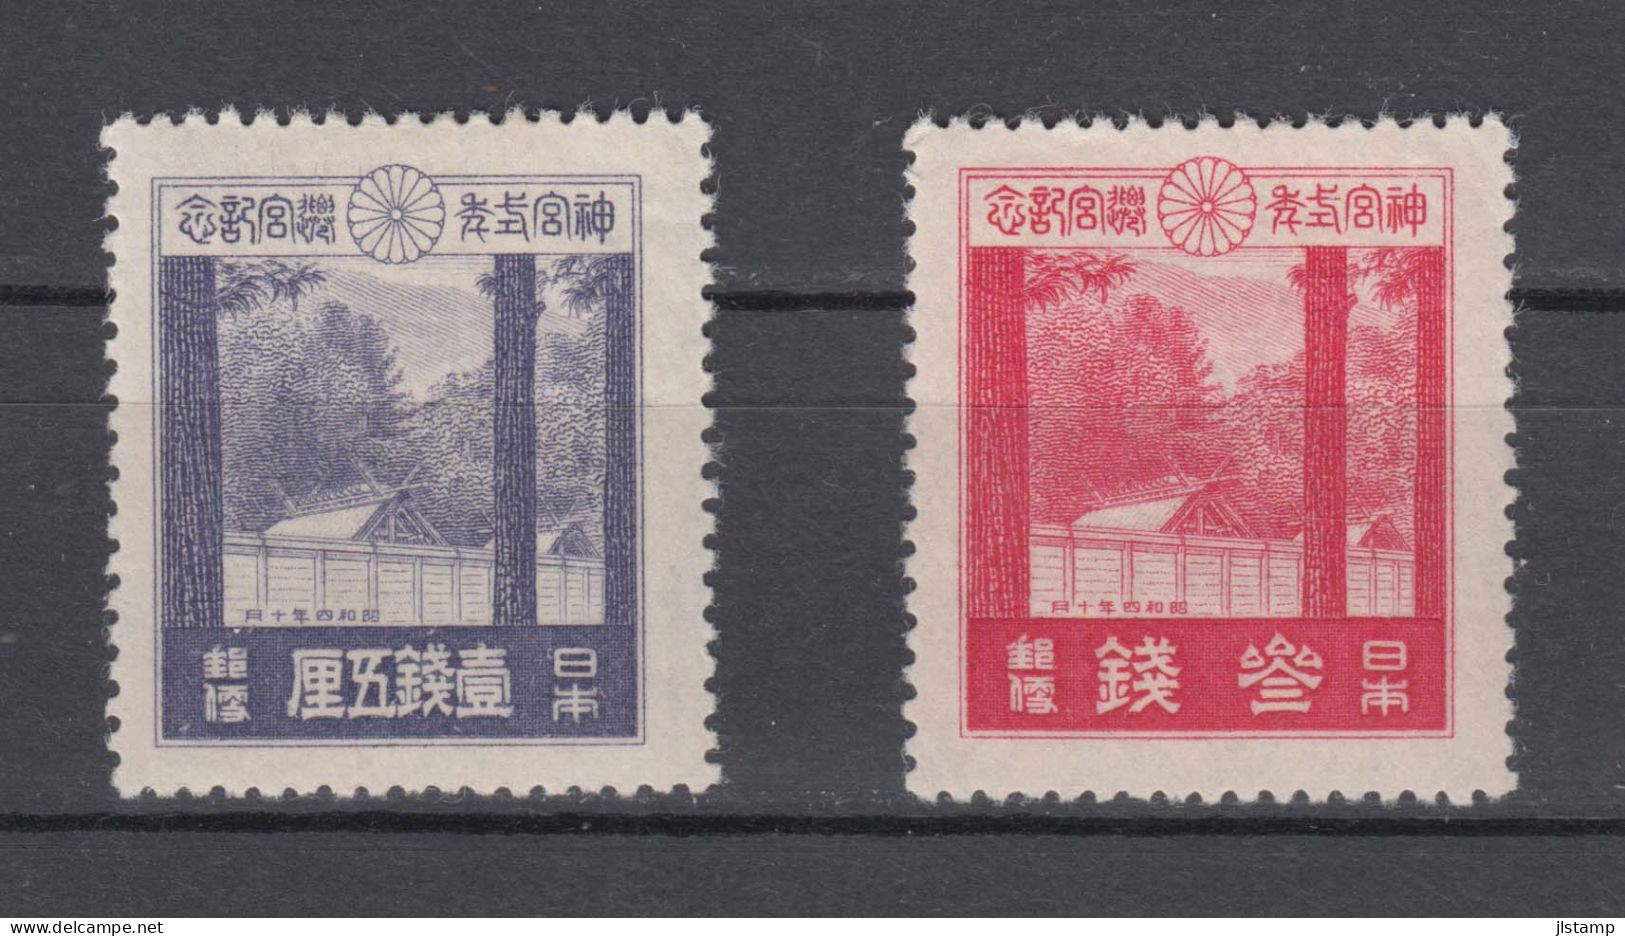 Japan 1929 Ise Shrines Stamps Set Of 2 ,Scott# 206-207,OG MH,VF - Neufs